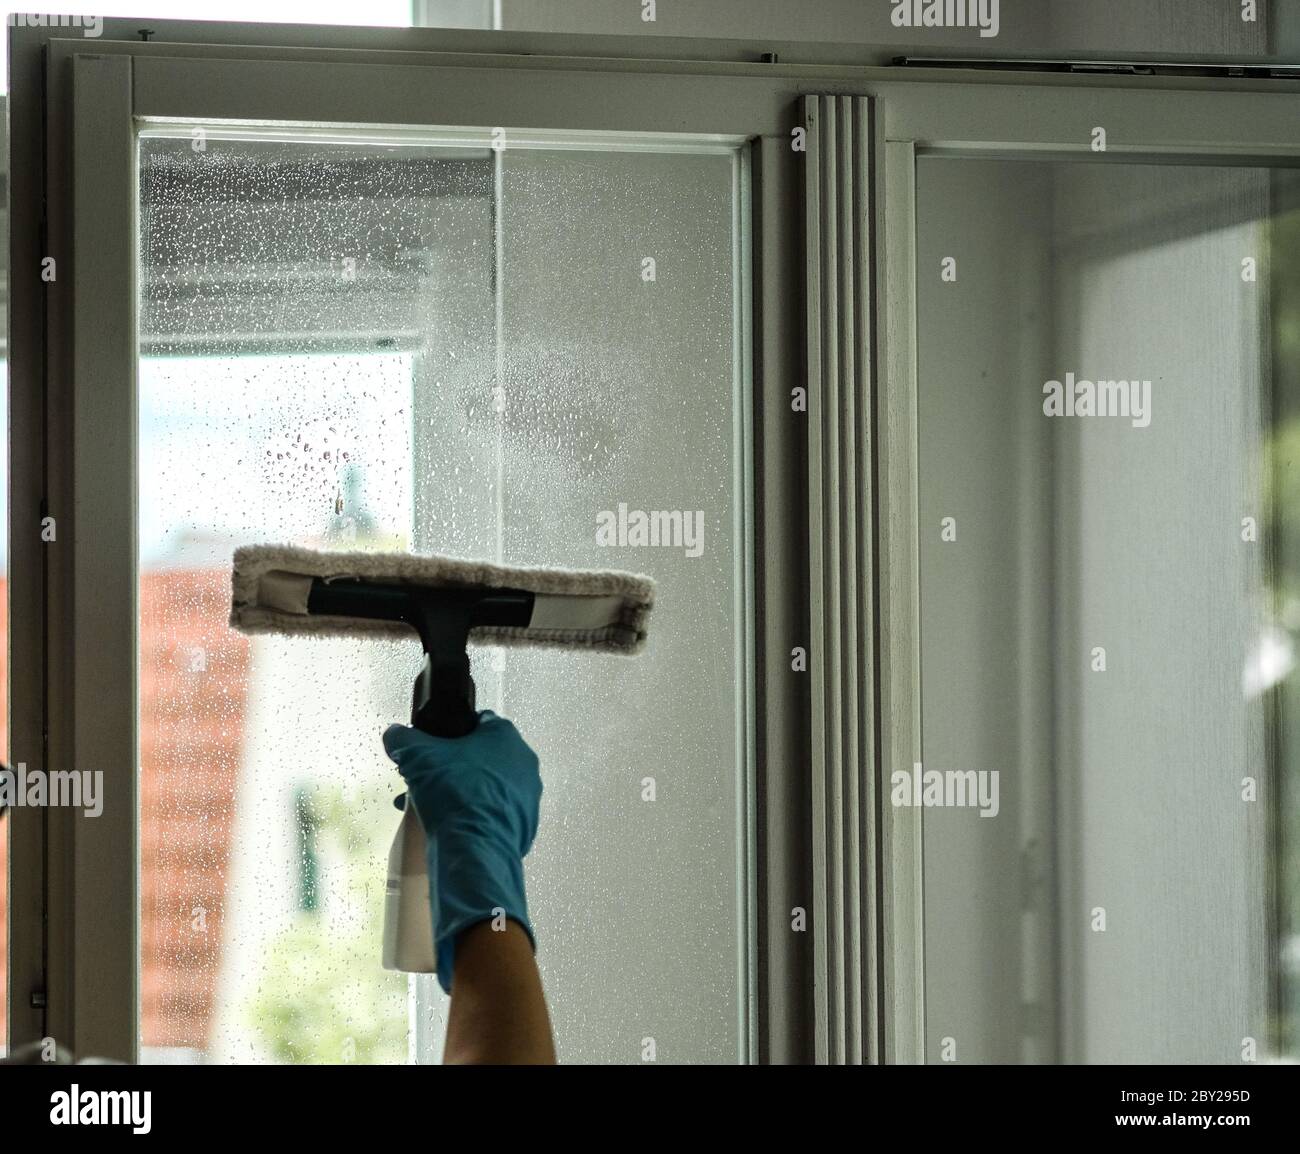 Berlín, Alemania. 07 de junio de 2020. Una ventana se humedece con un limpiador húmedo y se limpia previamente. Crédito: Jens Kalaene/dpa-Zentralbild/ZB/dpa/Alamy Live News Foto de stock